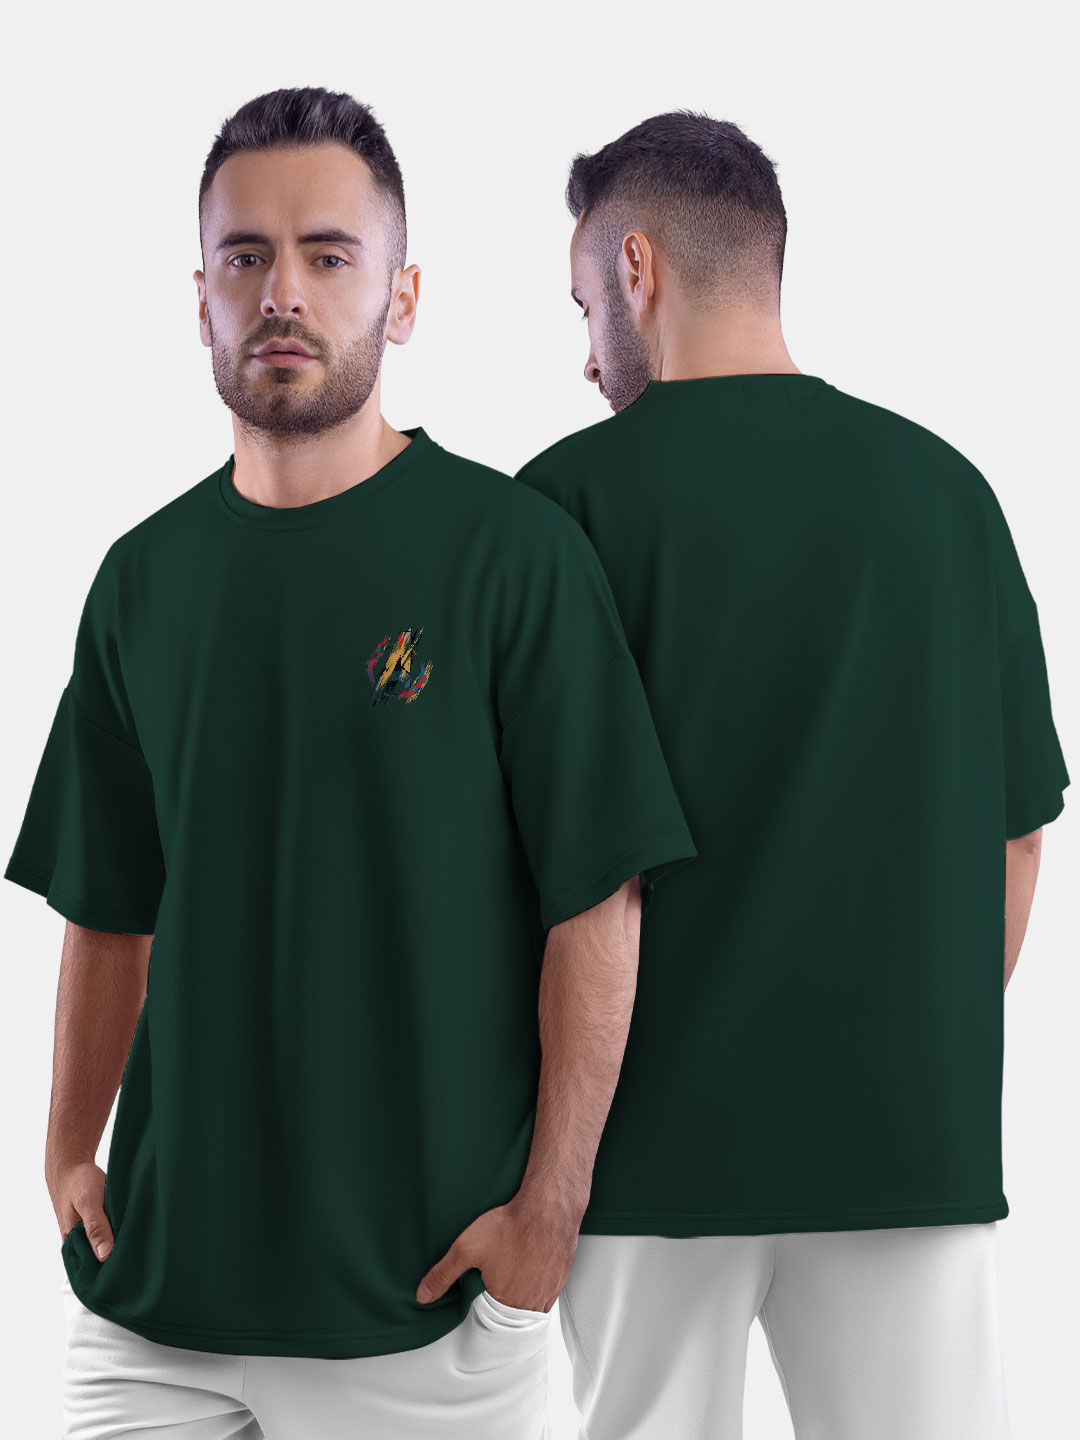 Buy Avenger Badge - Male Oversized T-Shirt T-Shirts Online